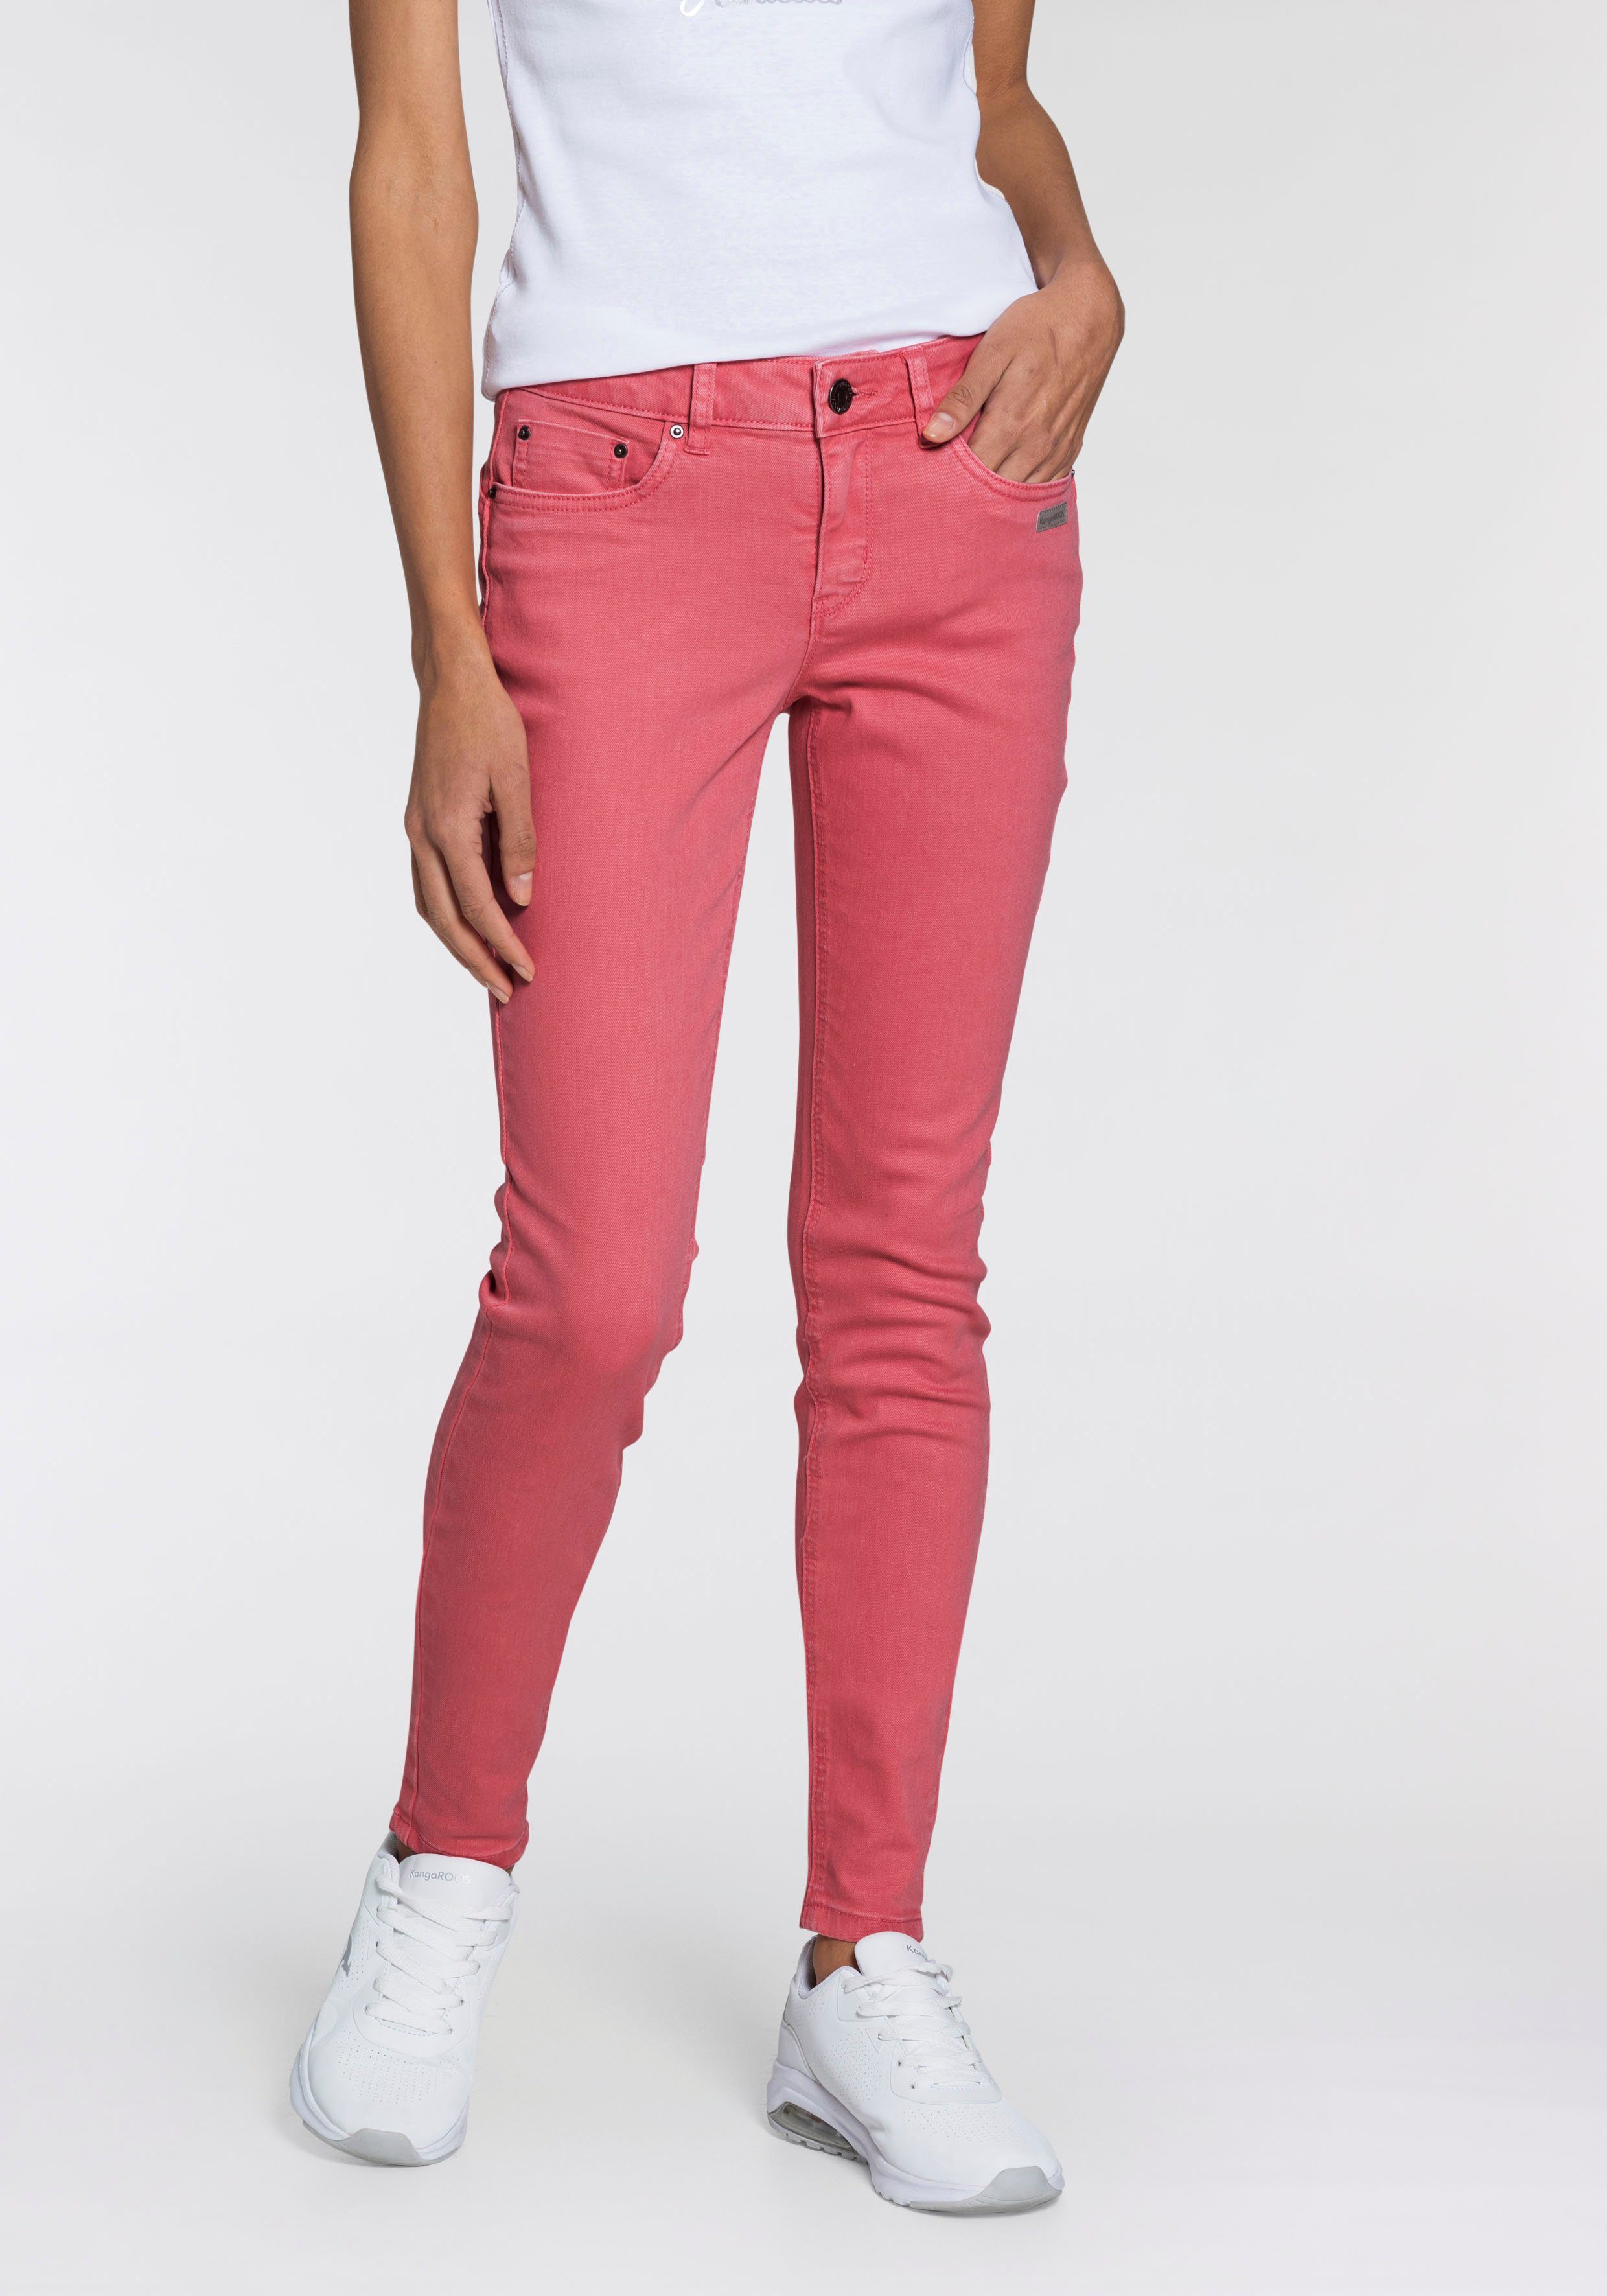 Rosa Hose online kaufen » Hose in pink | OTTO